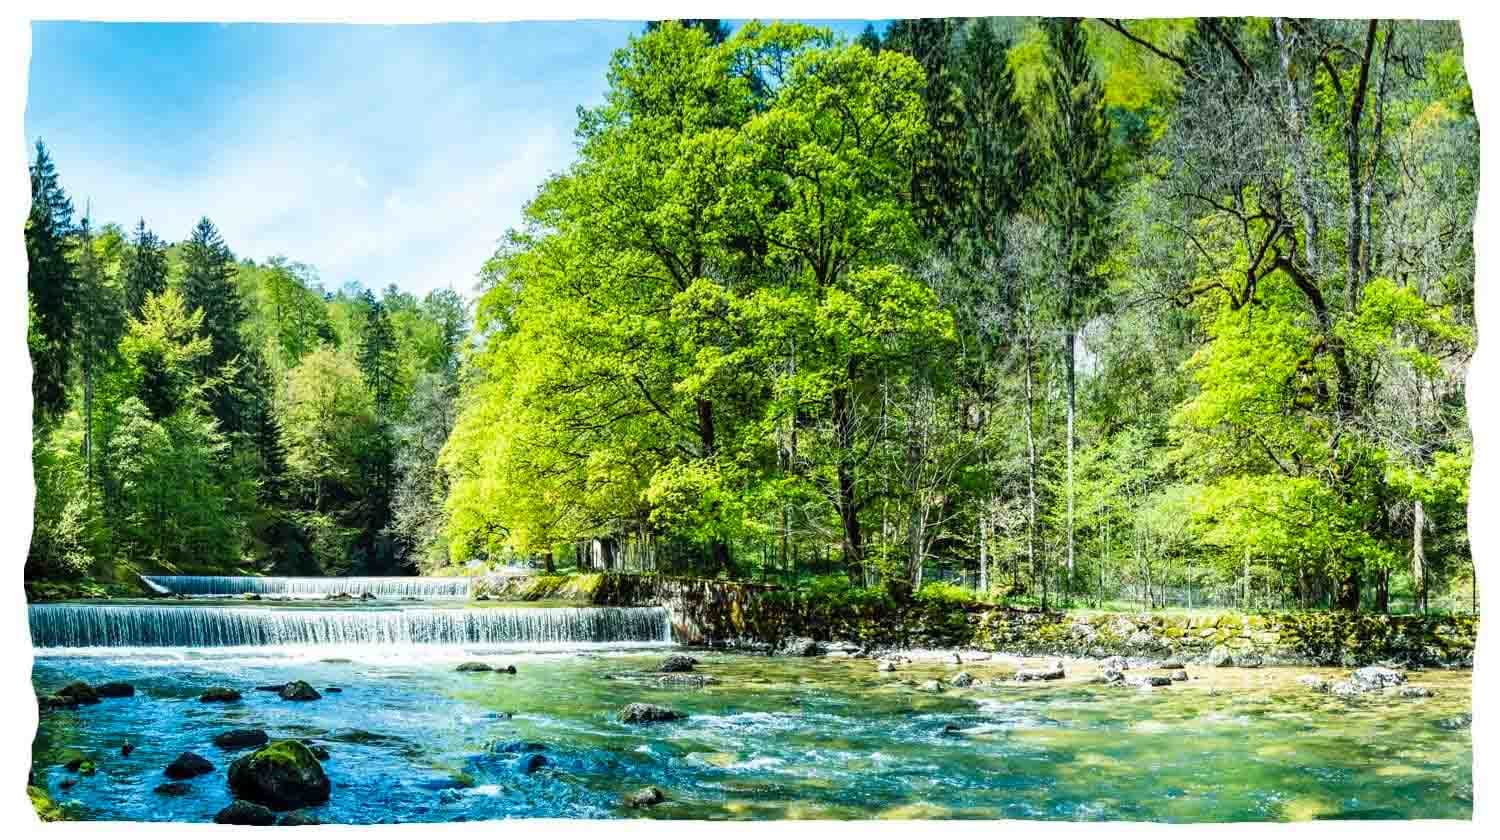 Un fiume pulito con una piccola cascata che scorre attraverso una foresta.